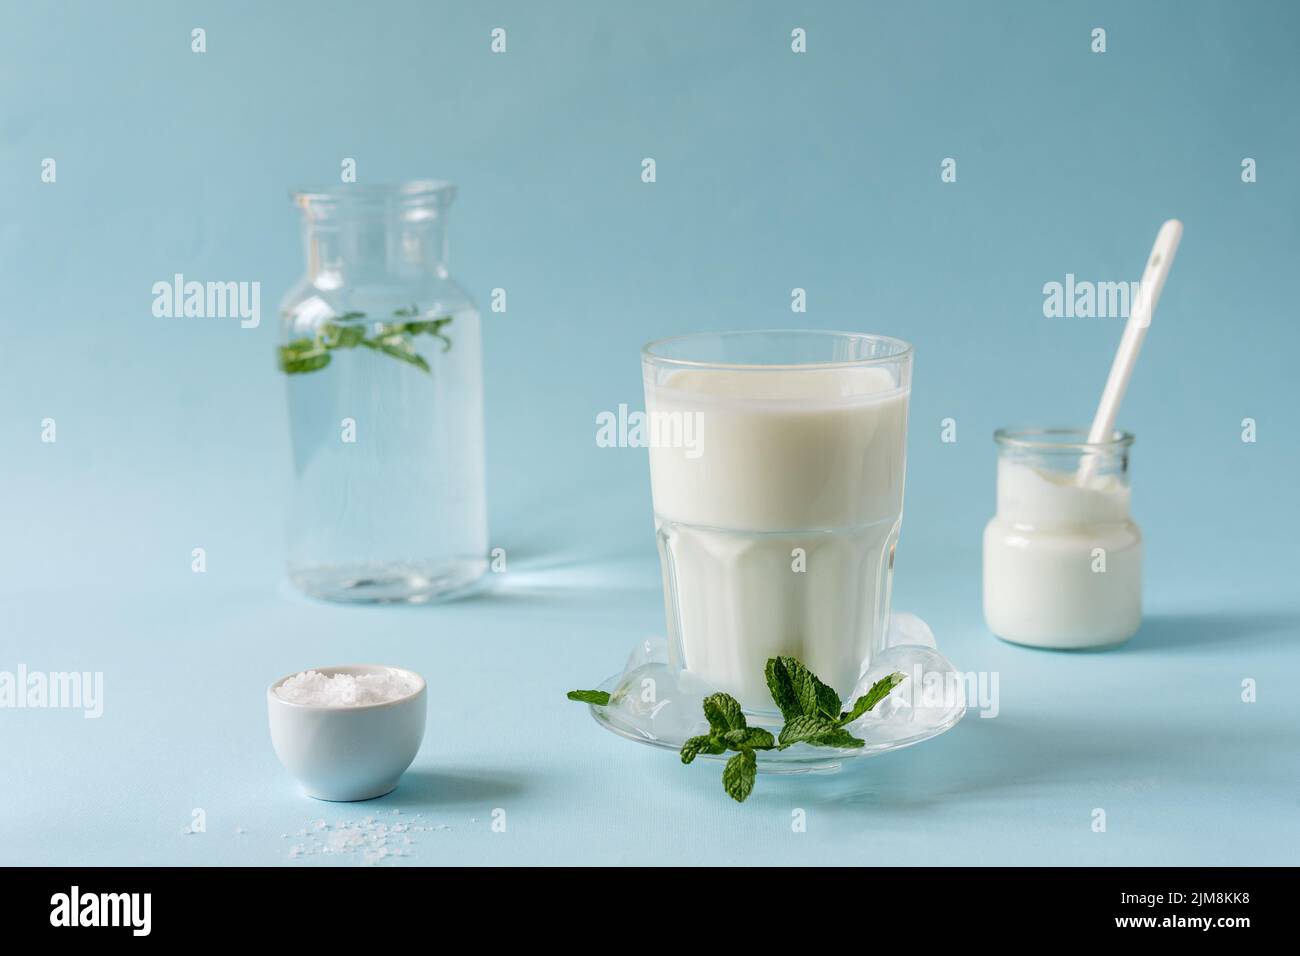 L'ayran ou Doogh est une boisson rafraîchissante populaire du Moyen-Orient, préparée avec du yaourt, de l'eau et du sel. Arrière-plan bleu Banque D'Images